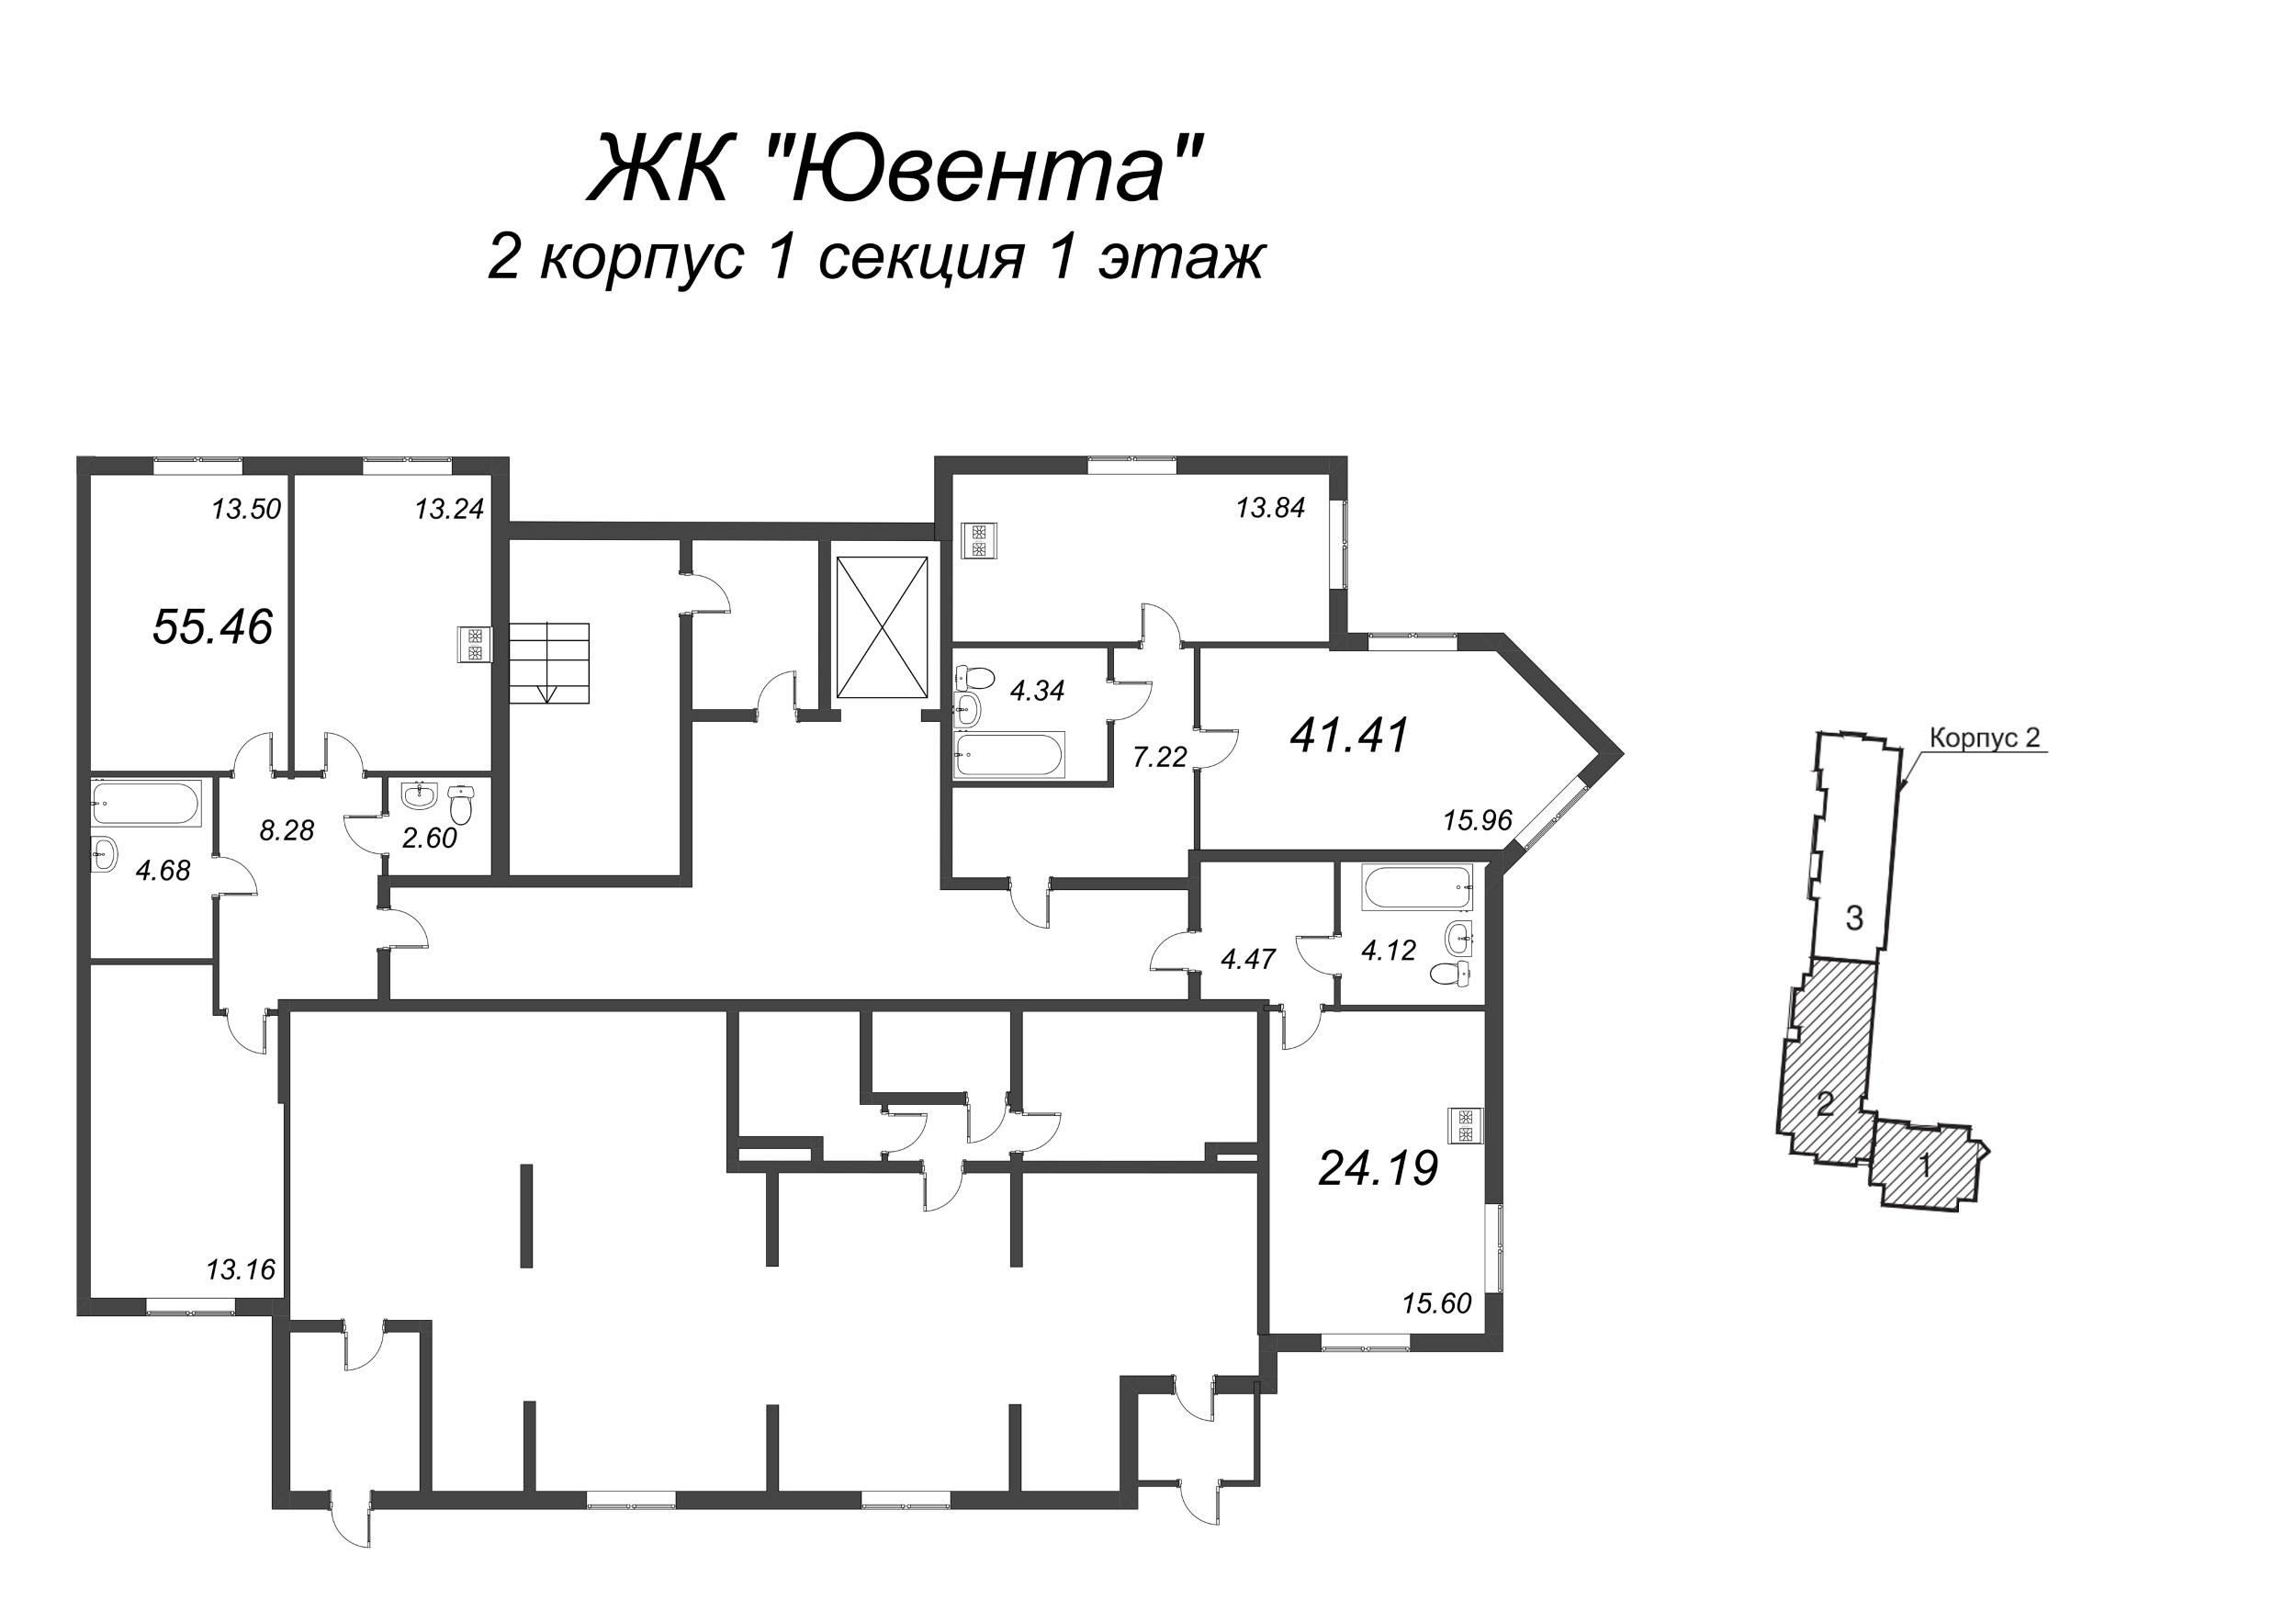 Квартира-студия, 24.19 м² в ЖК "Ювента" - планировка этажа